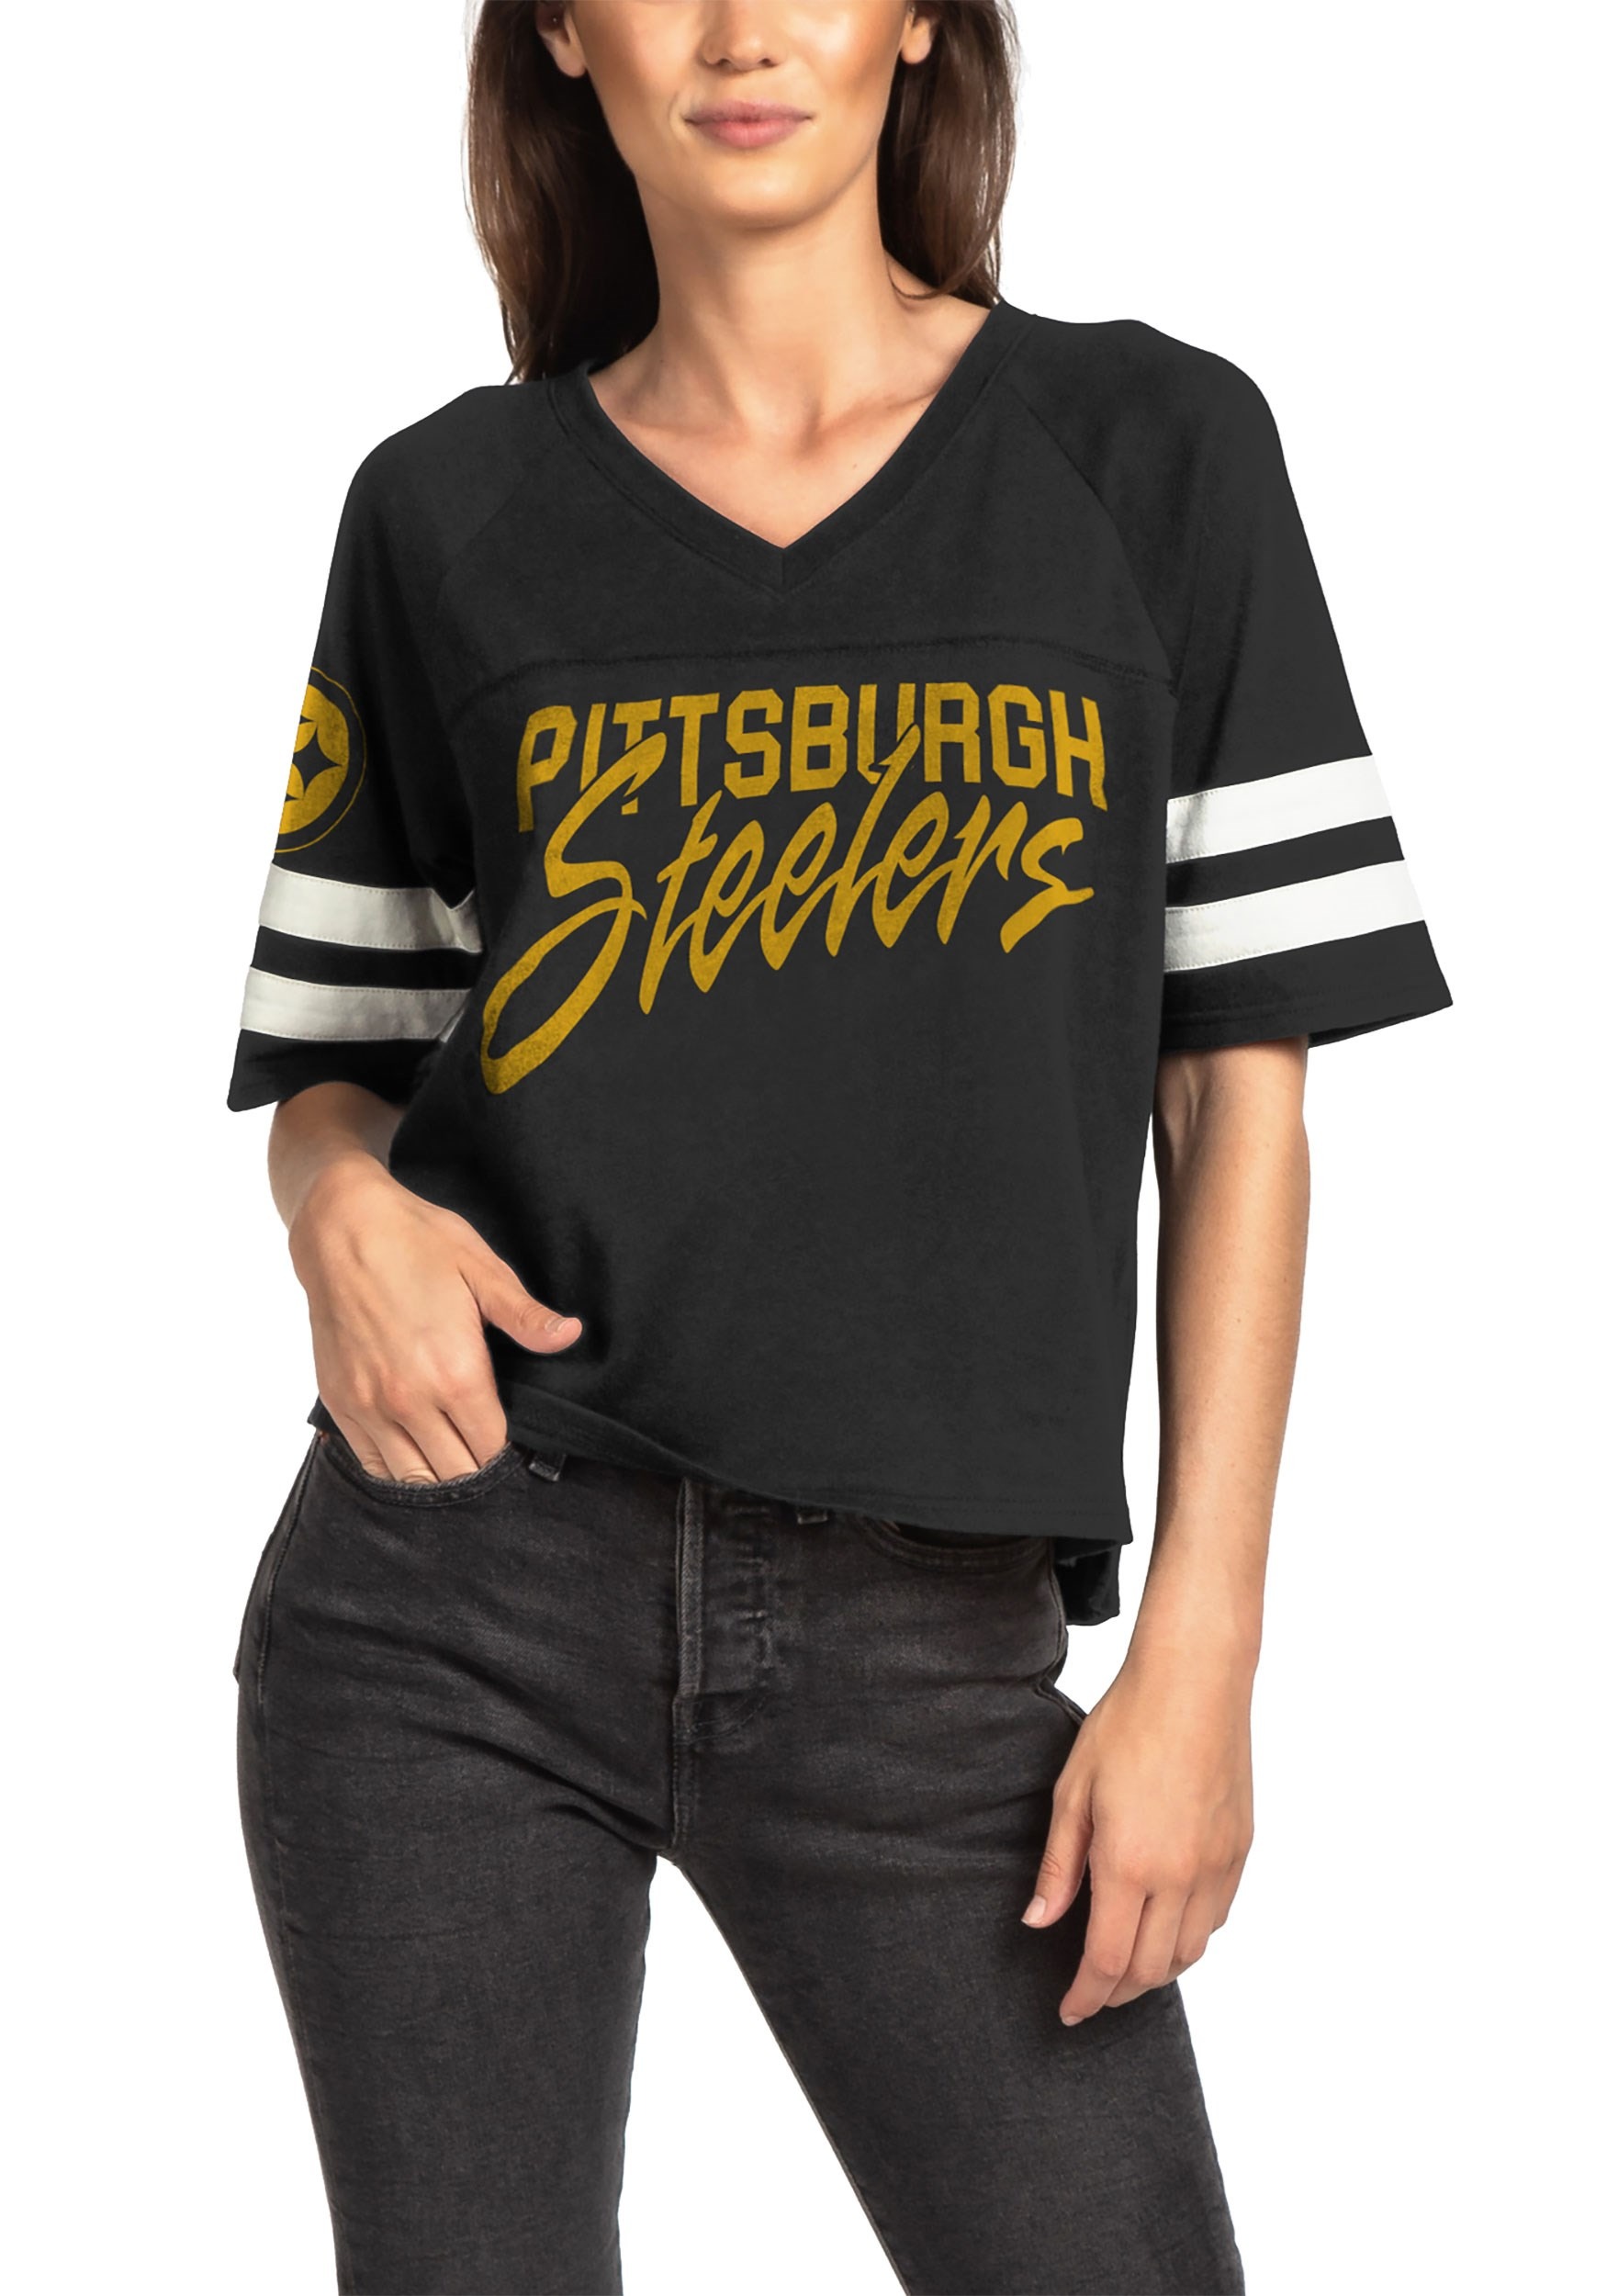 Pittsburgh Steelers Black Football Tee